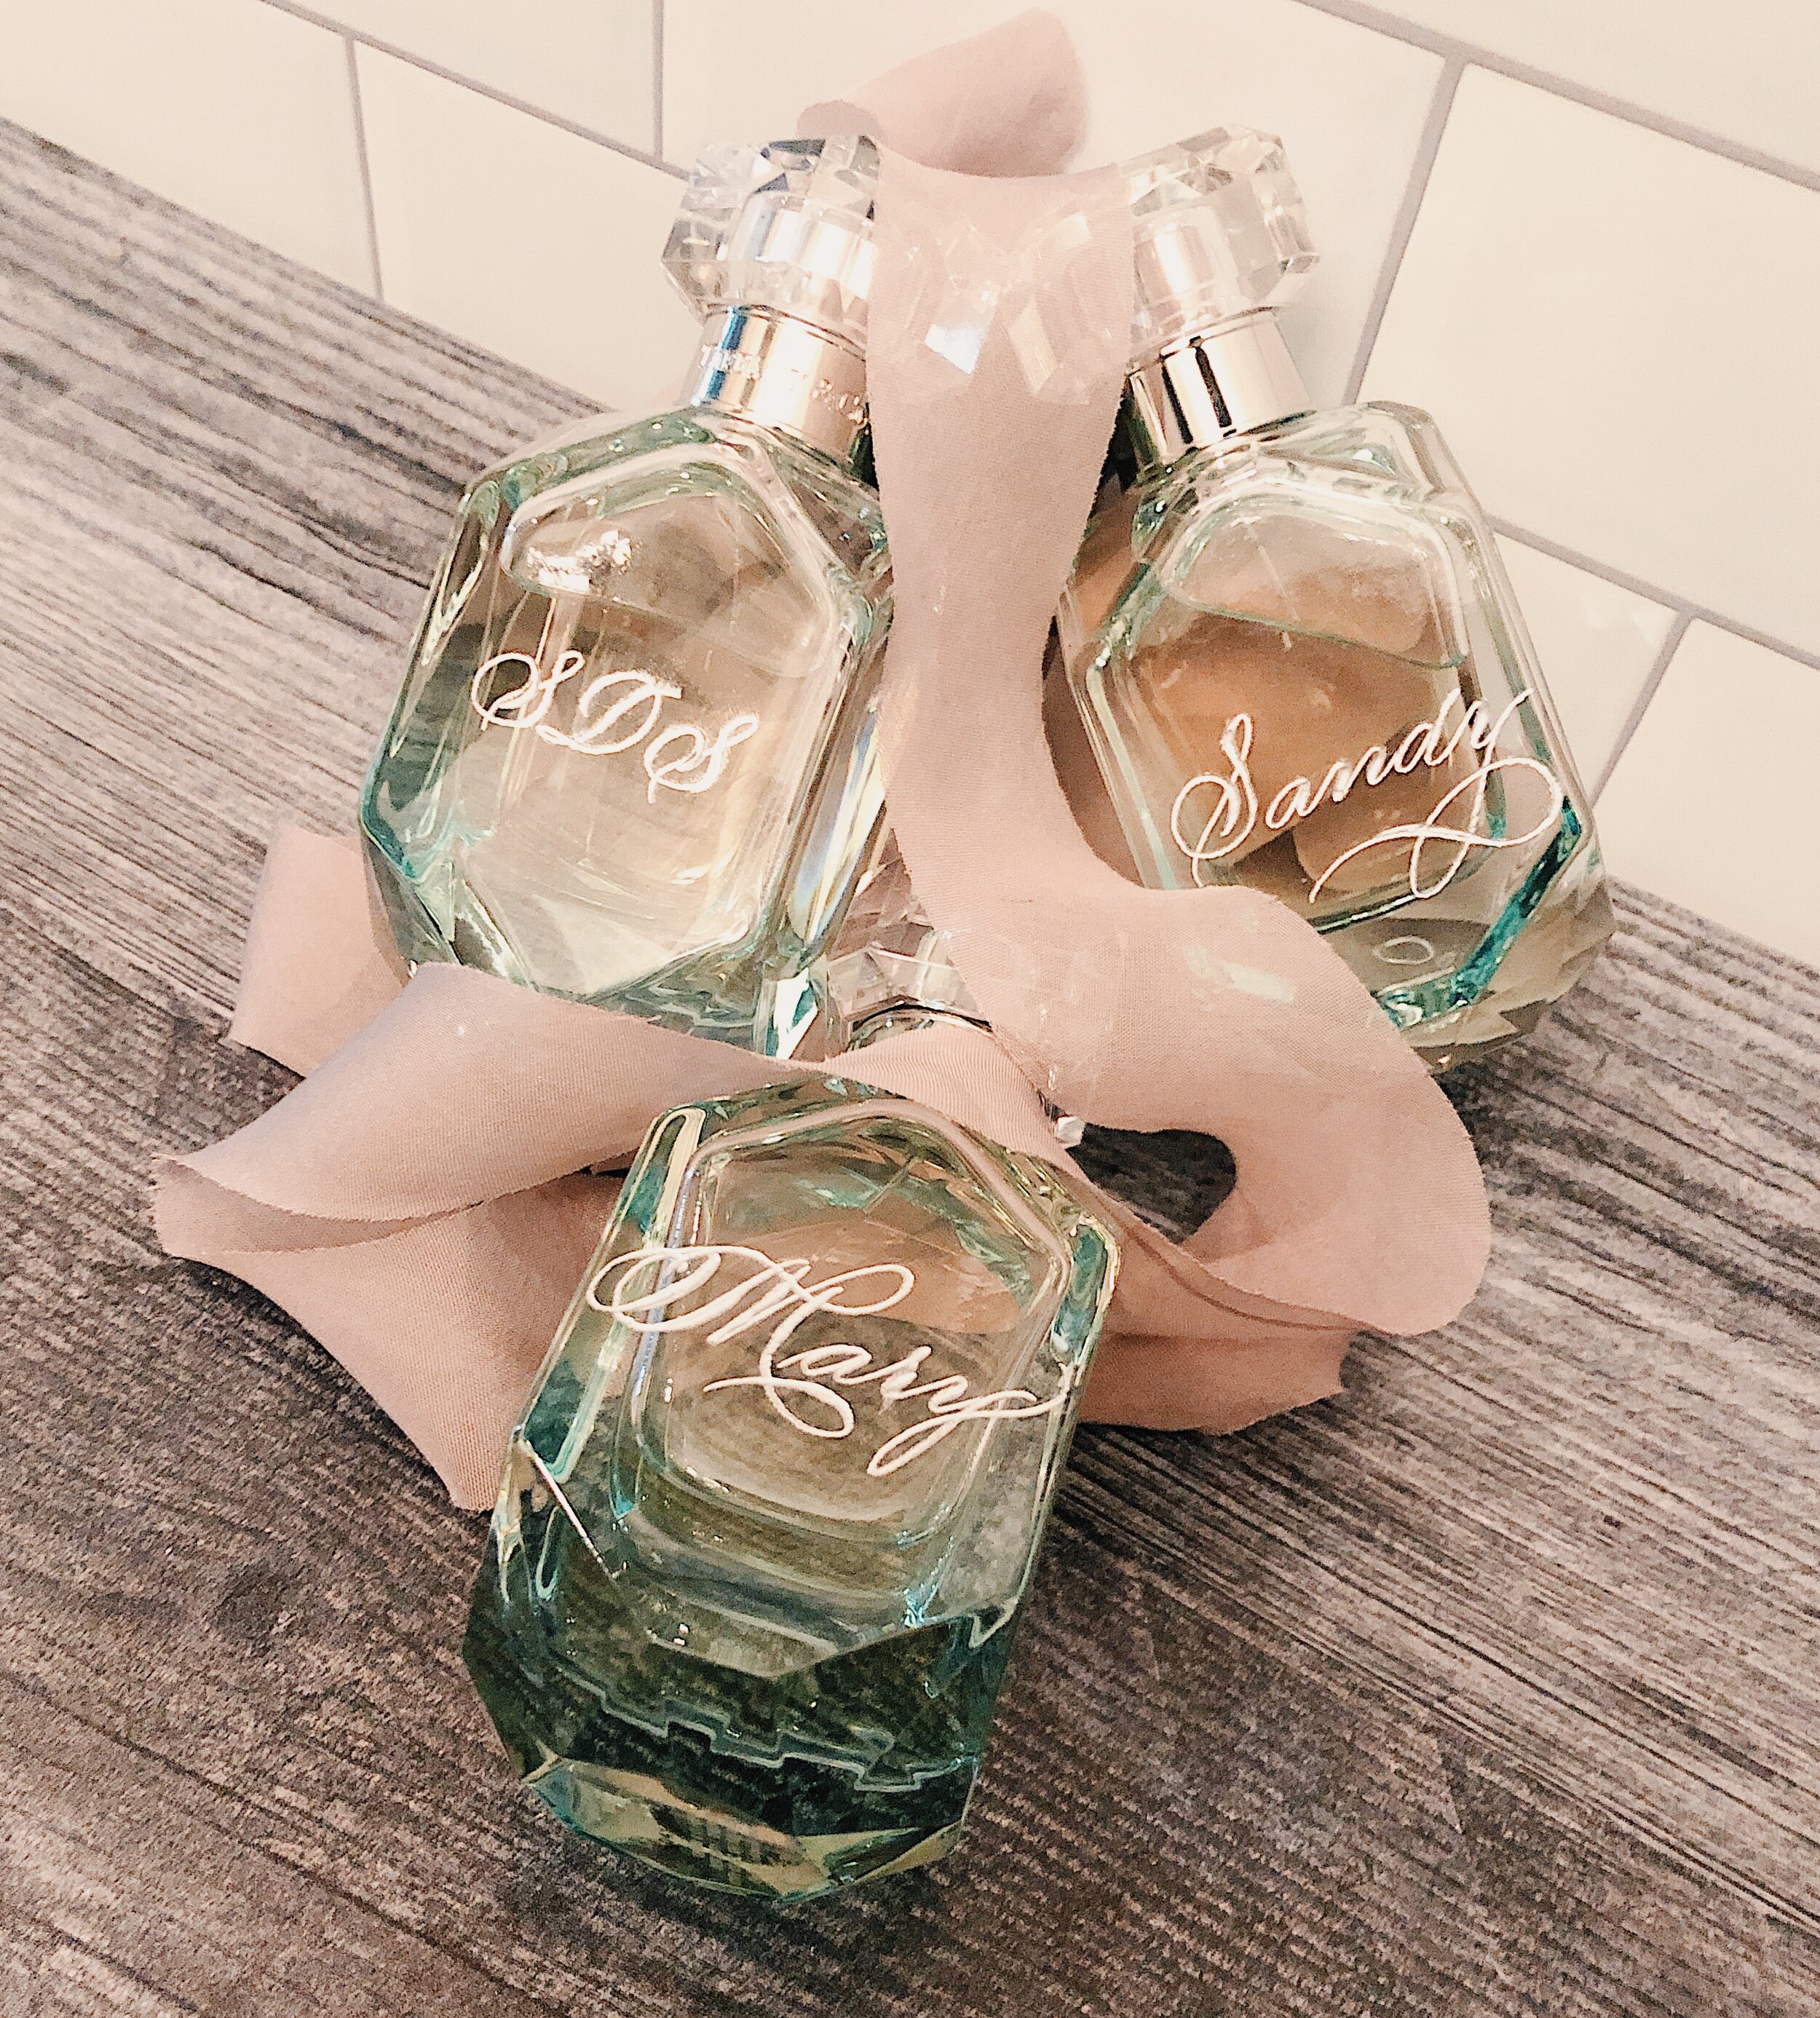 houston fragrance bottle engraving 